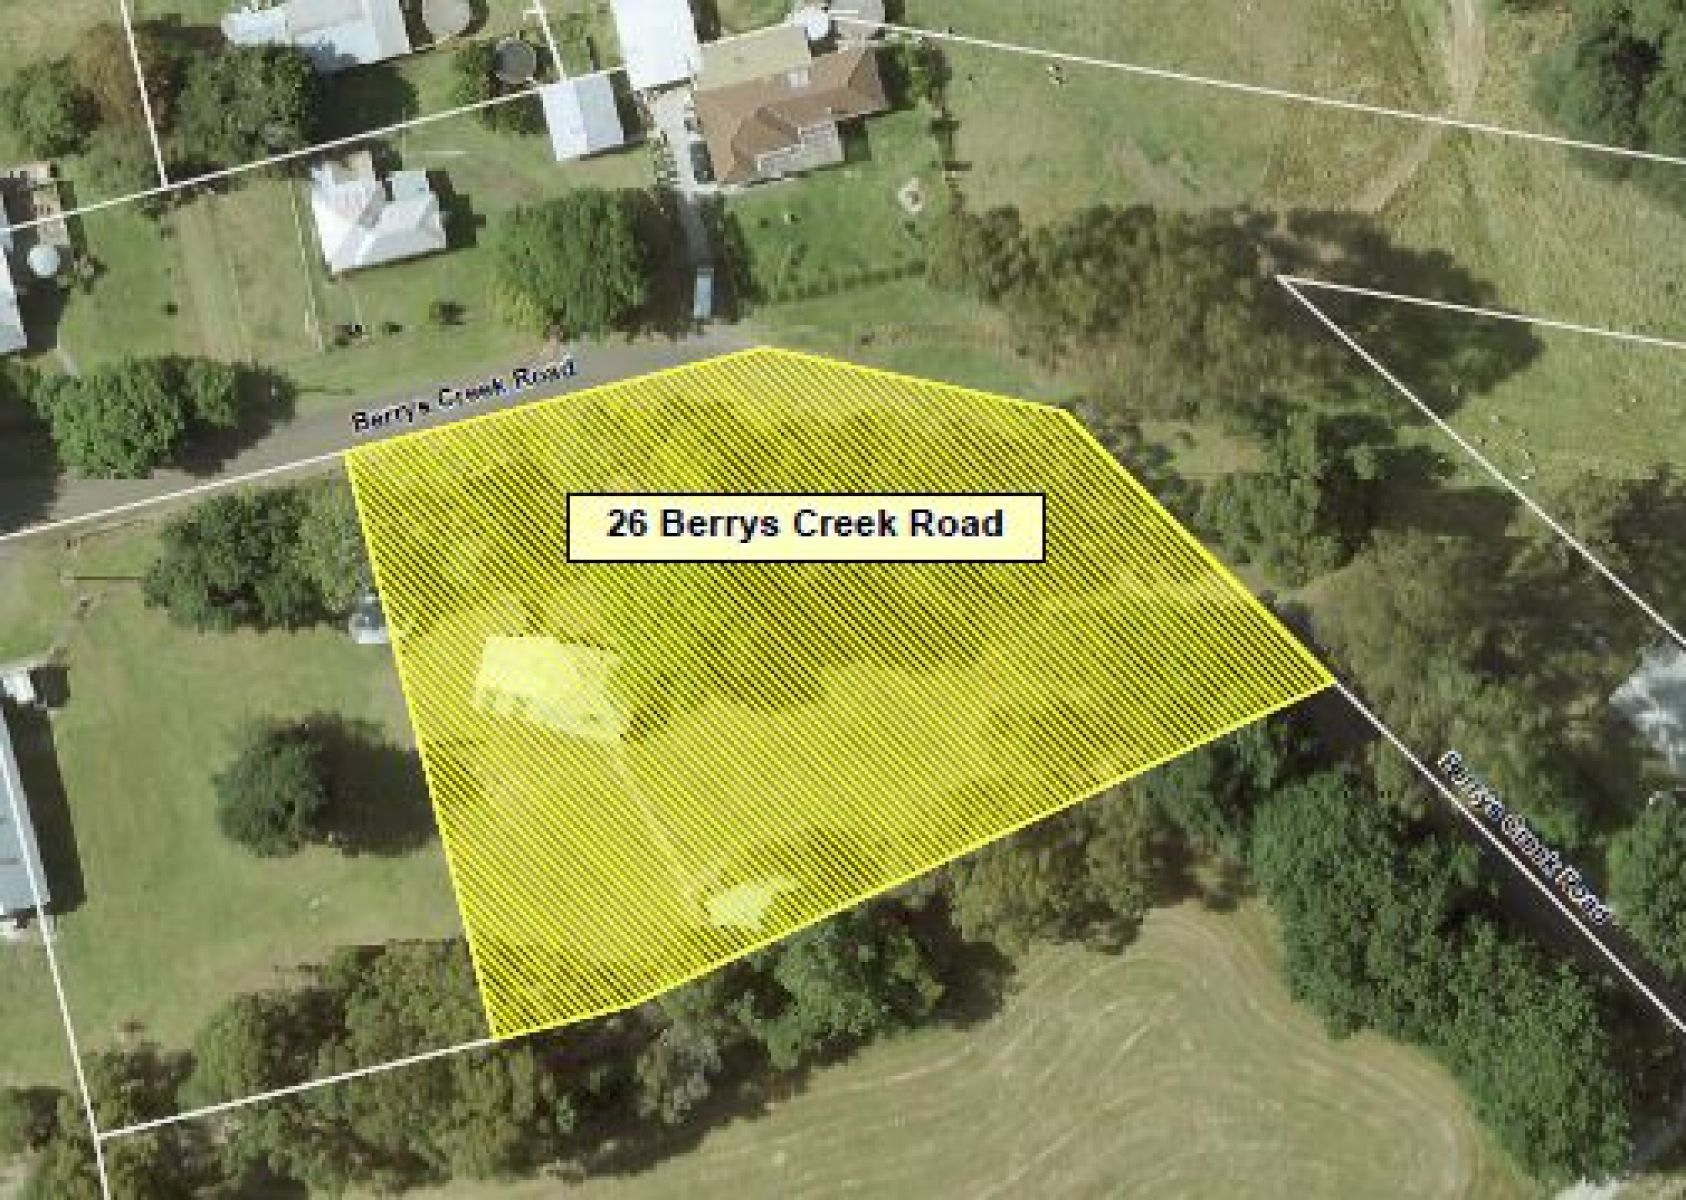 Aerial view of 26 Berrys Creek Road Berrys Creek